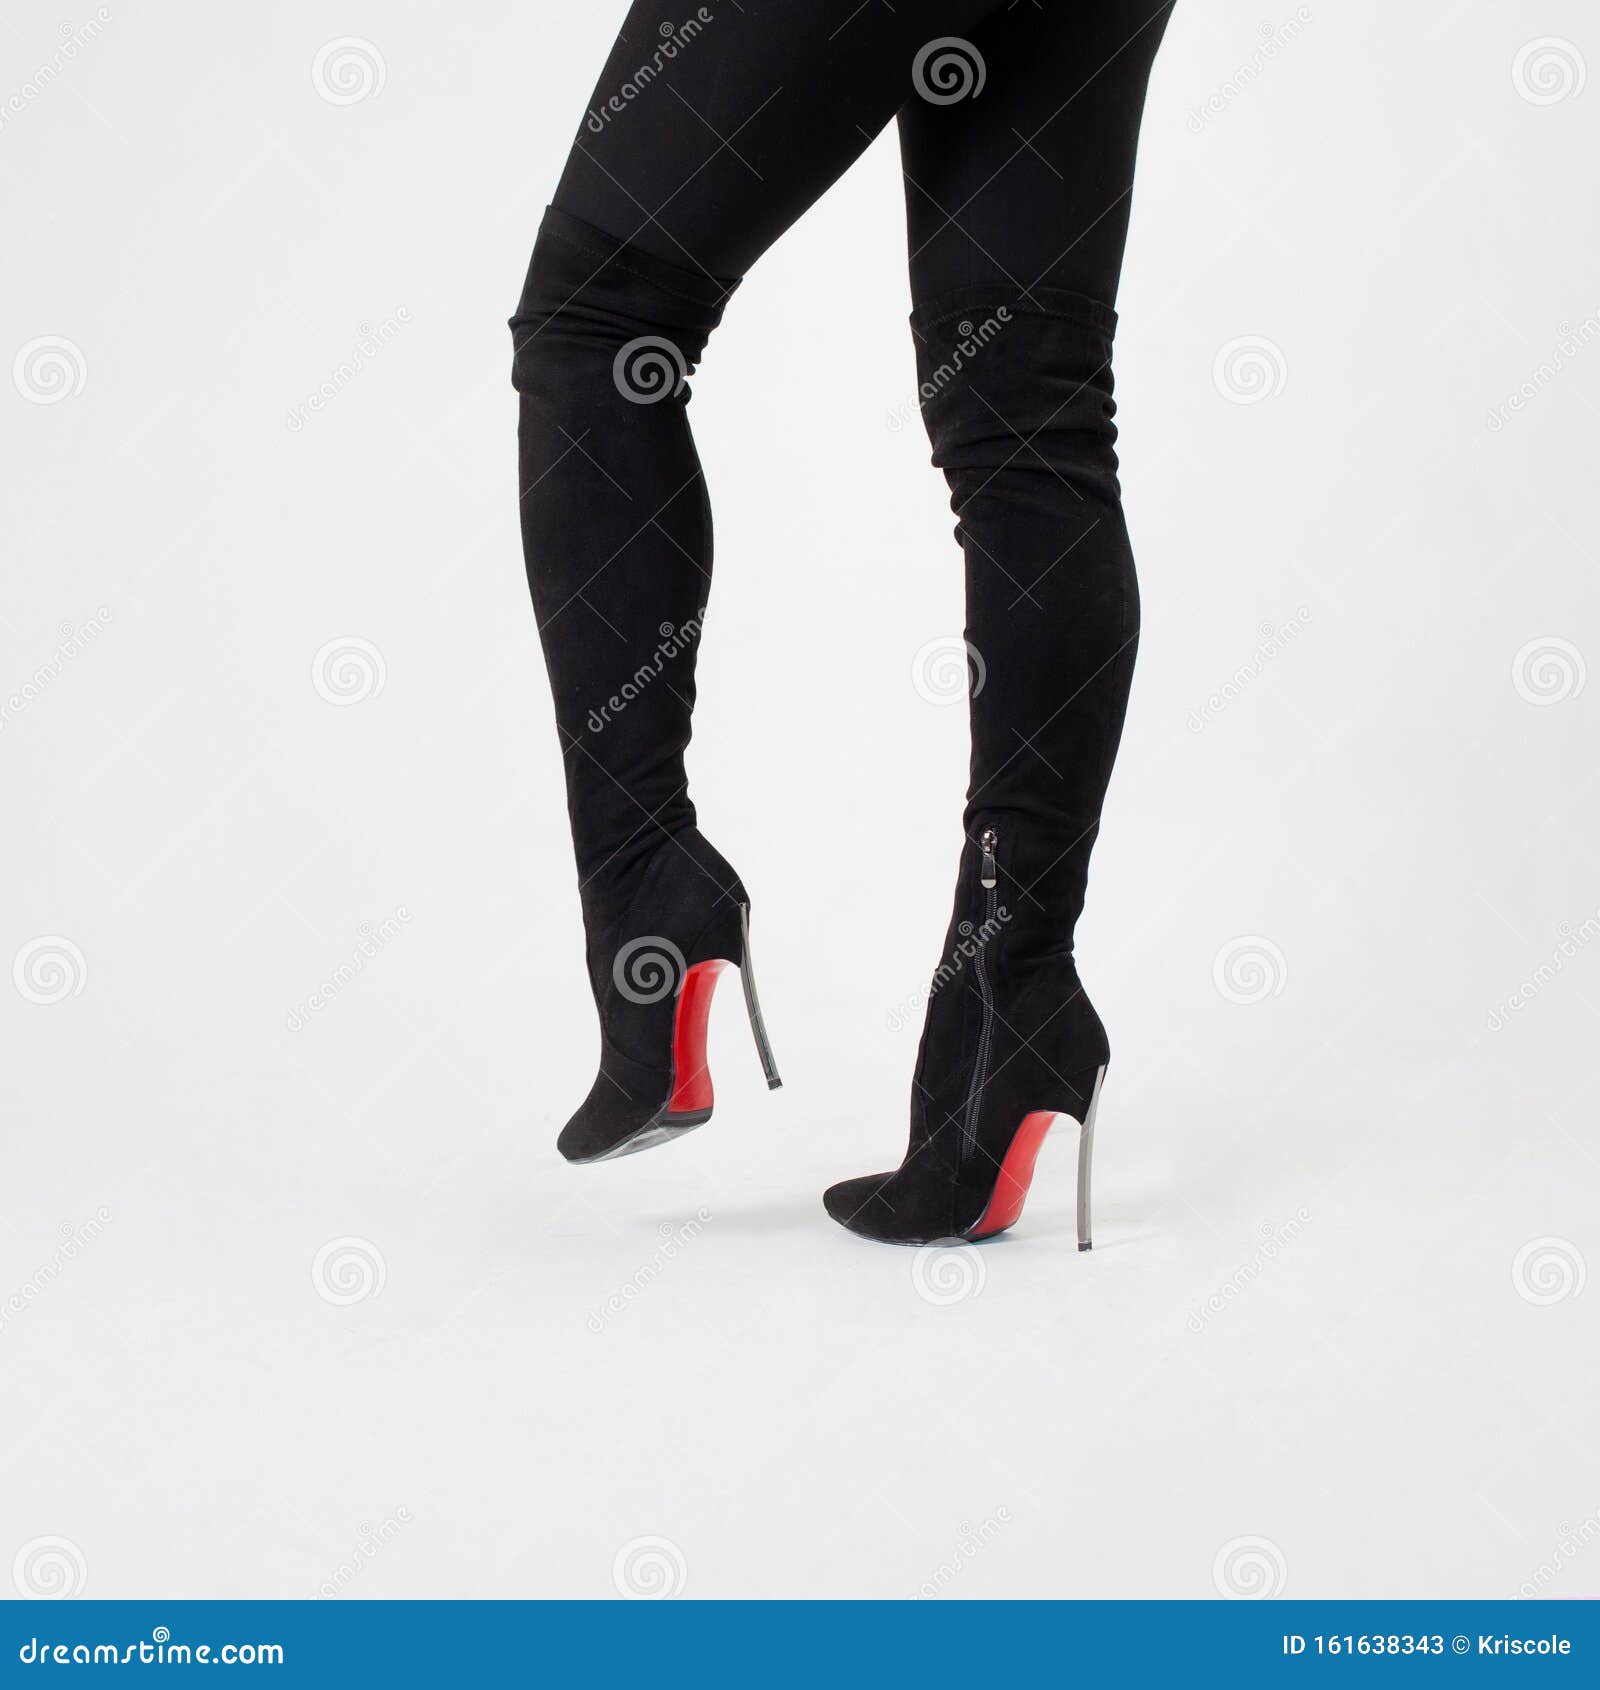 high heel pants